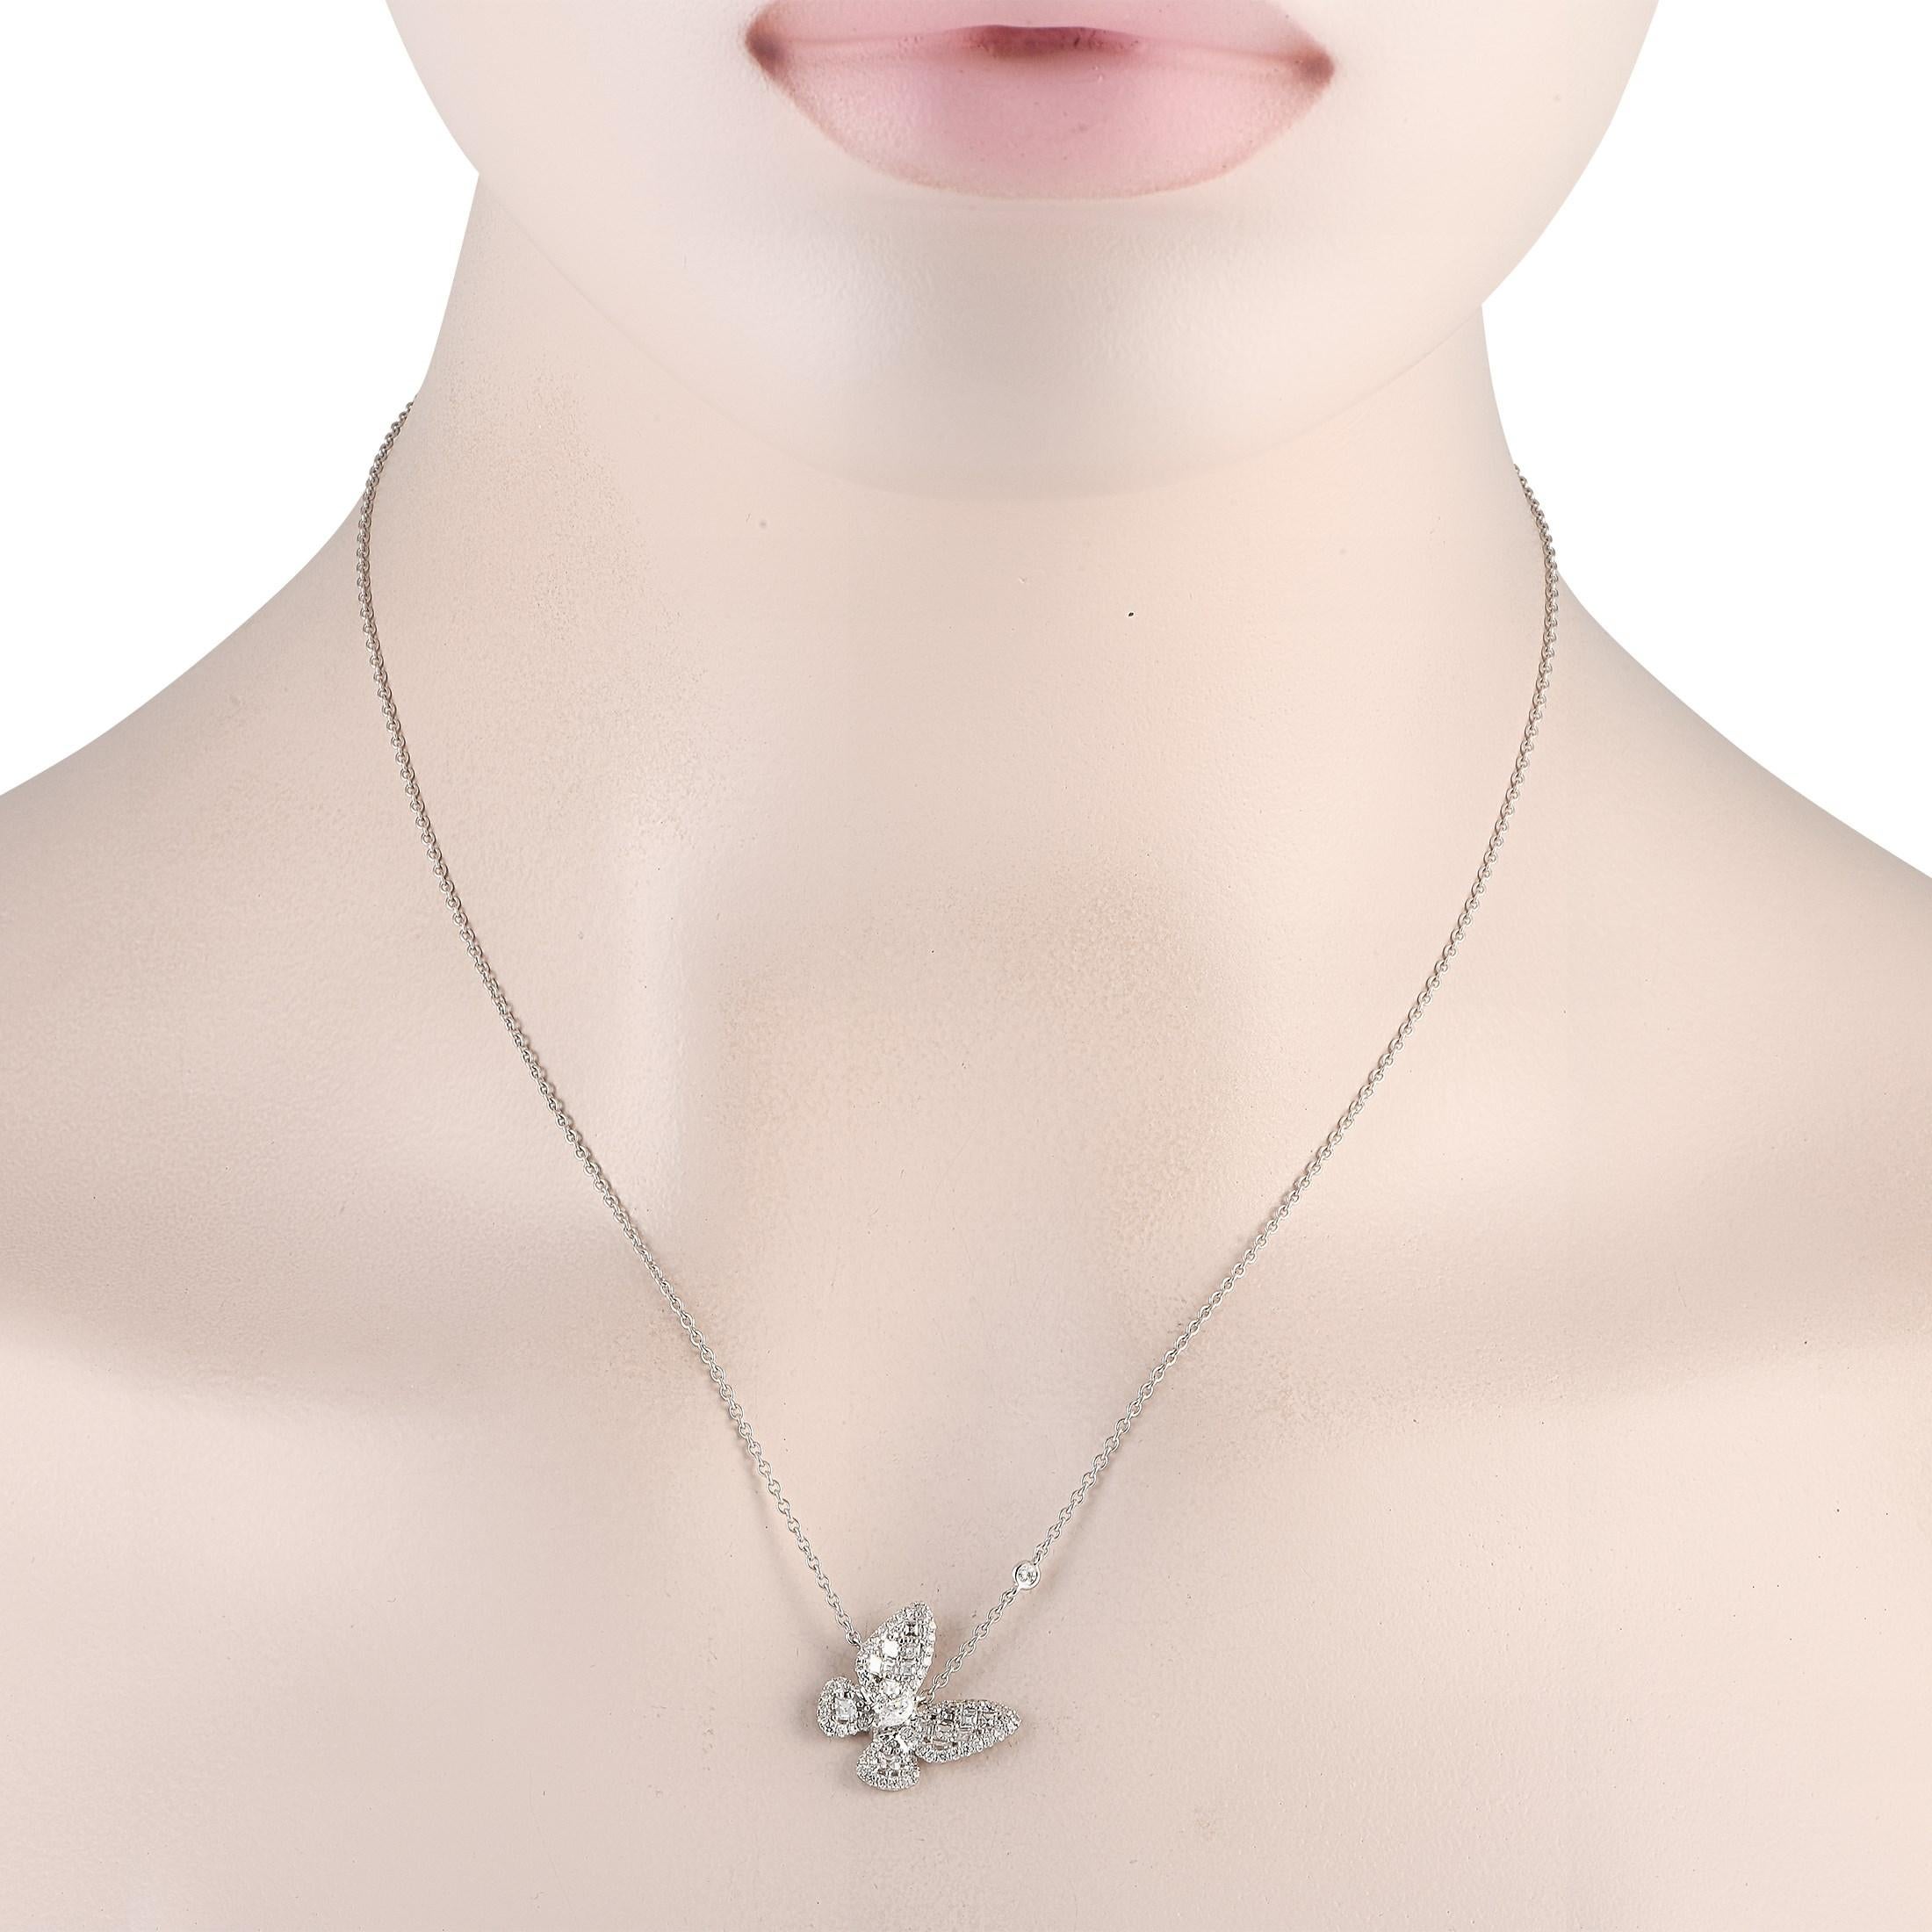 Ce collier papillon en diamant est une babiole ludique à l'éclat gracieux, le choix idéal pour les jours qui nécessitent une dose supplémentaire de paillettes. Le collier comporte une chaîne de 18 en or blanc massif 18K, retenant un pendentif de